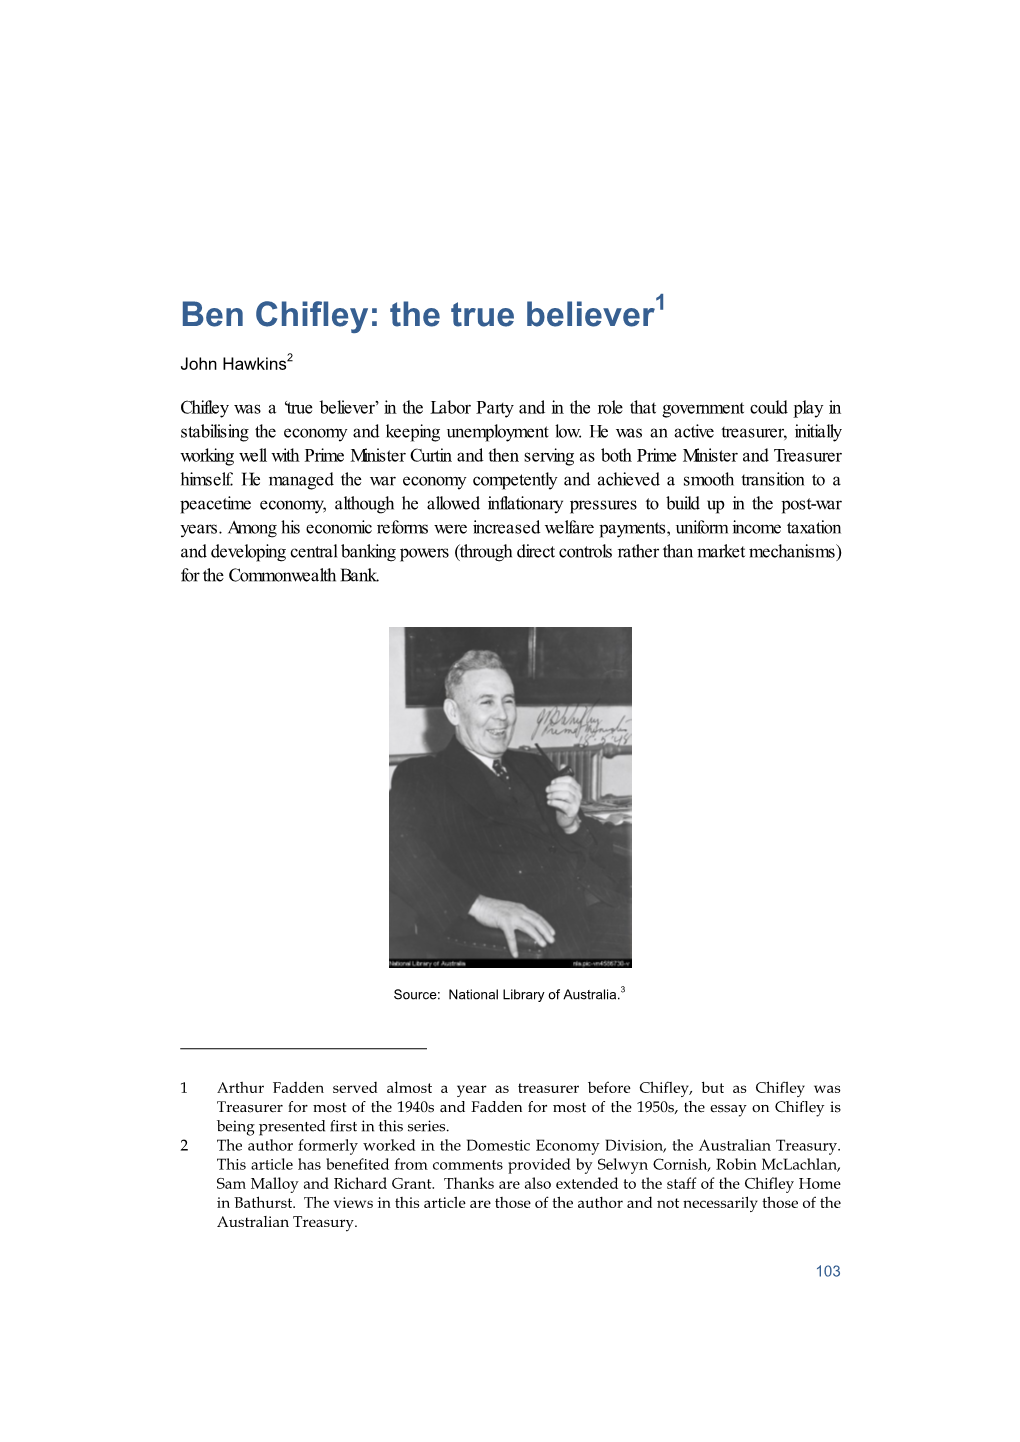 Ben Chifley: the True Believer1